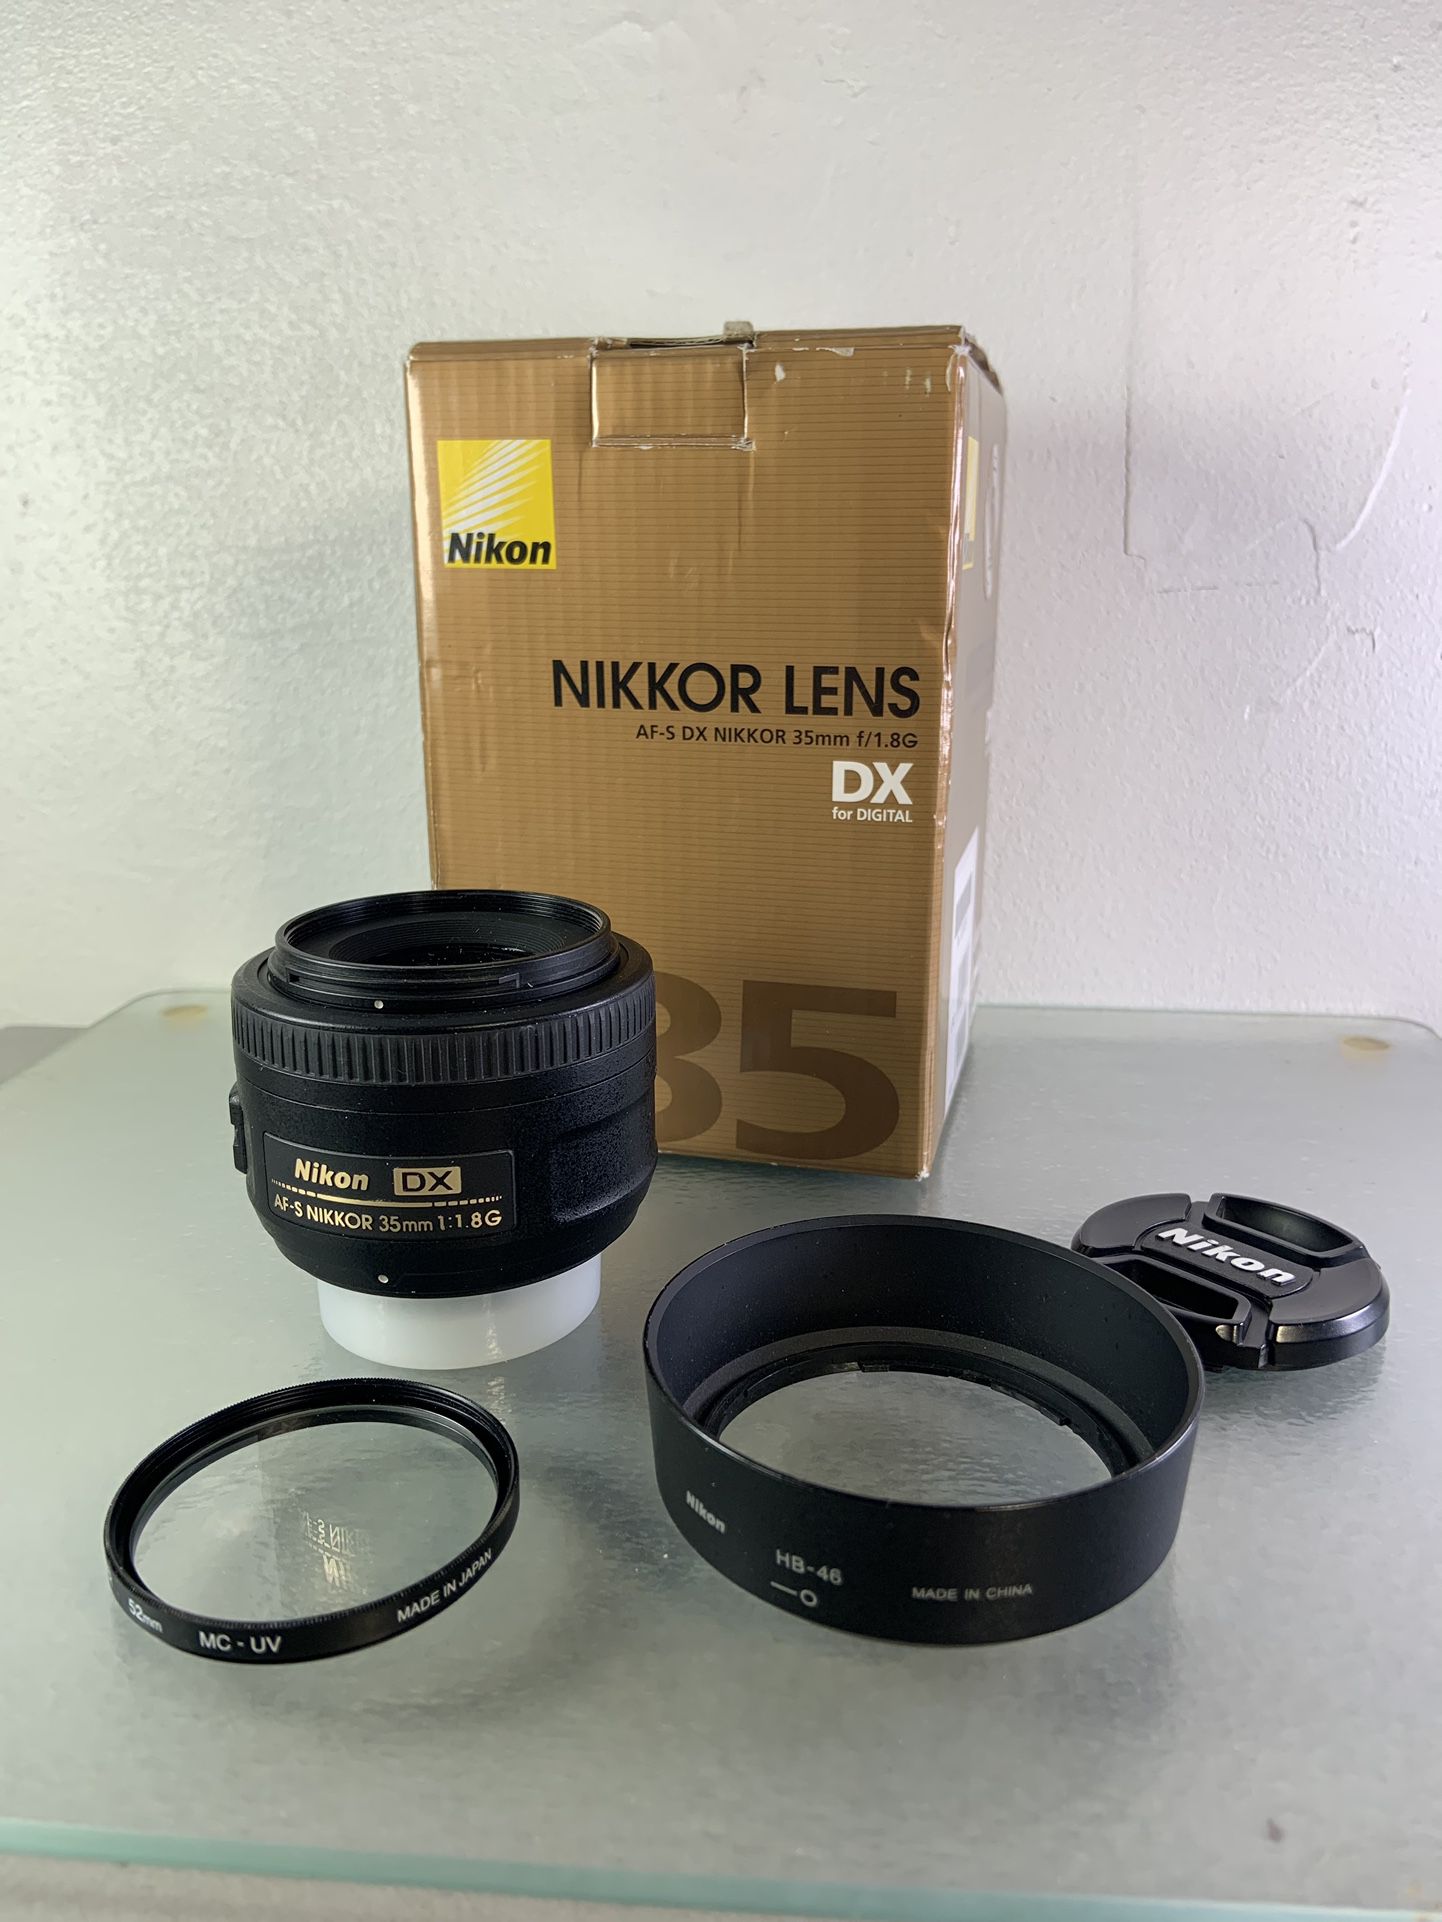 Nikon DX AF-S Nikkor 35mm f/1.8 G PRIME lens HB-46 for D90 D80